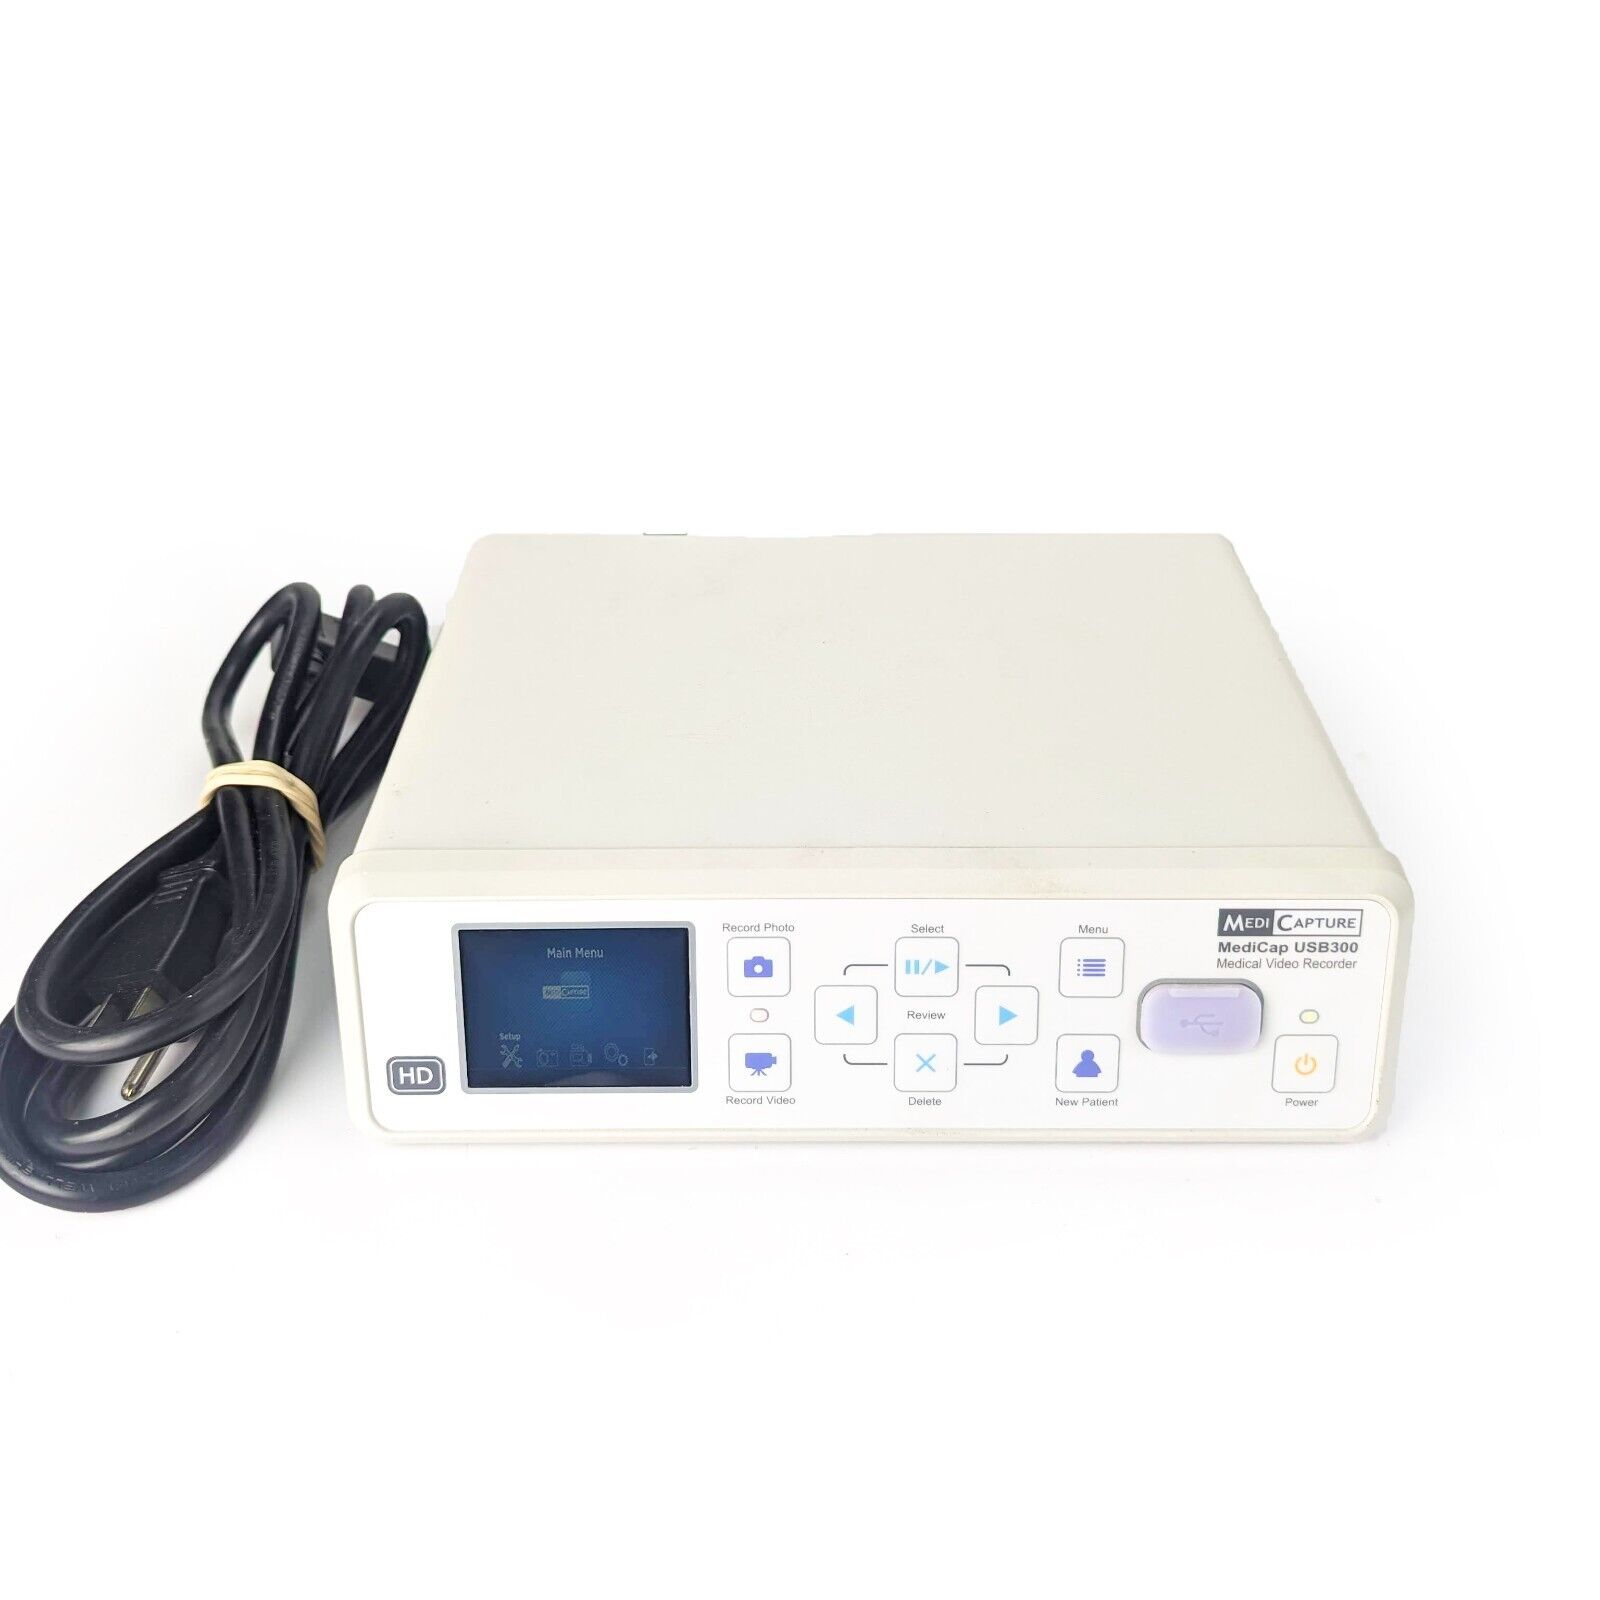 MediCapture MediCap USB300 High Definition Medical Video Recorder